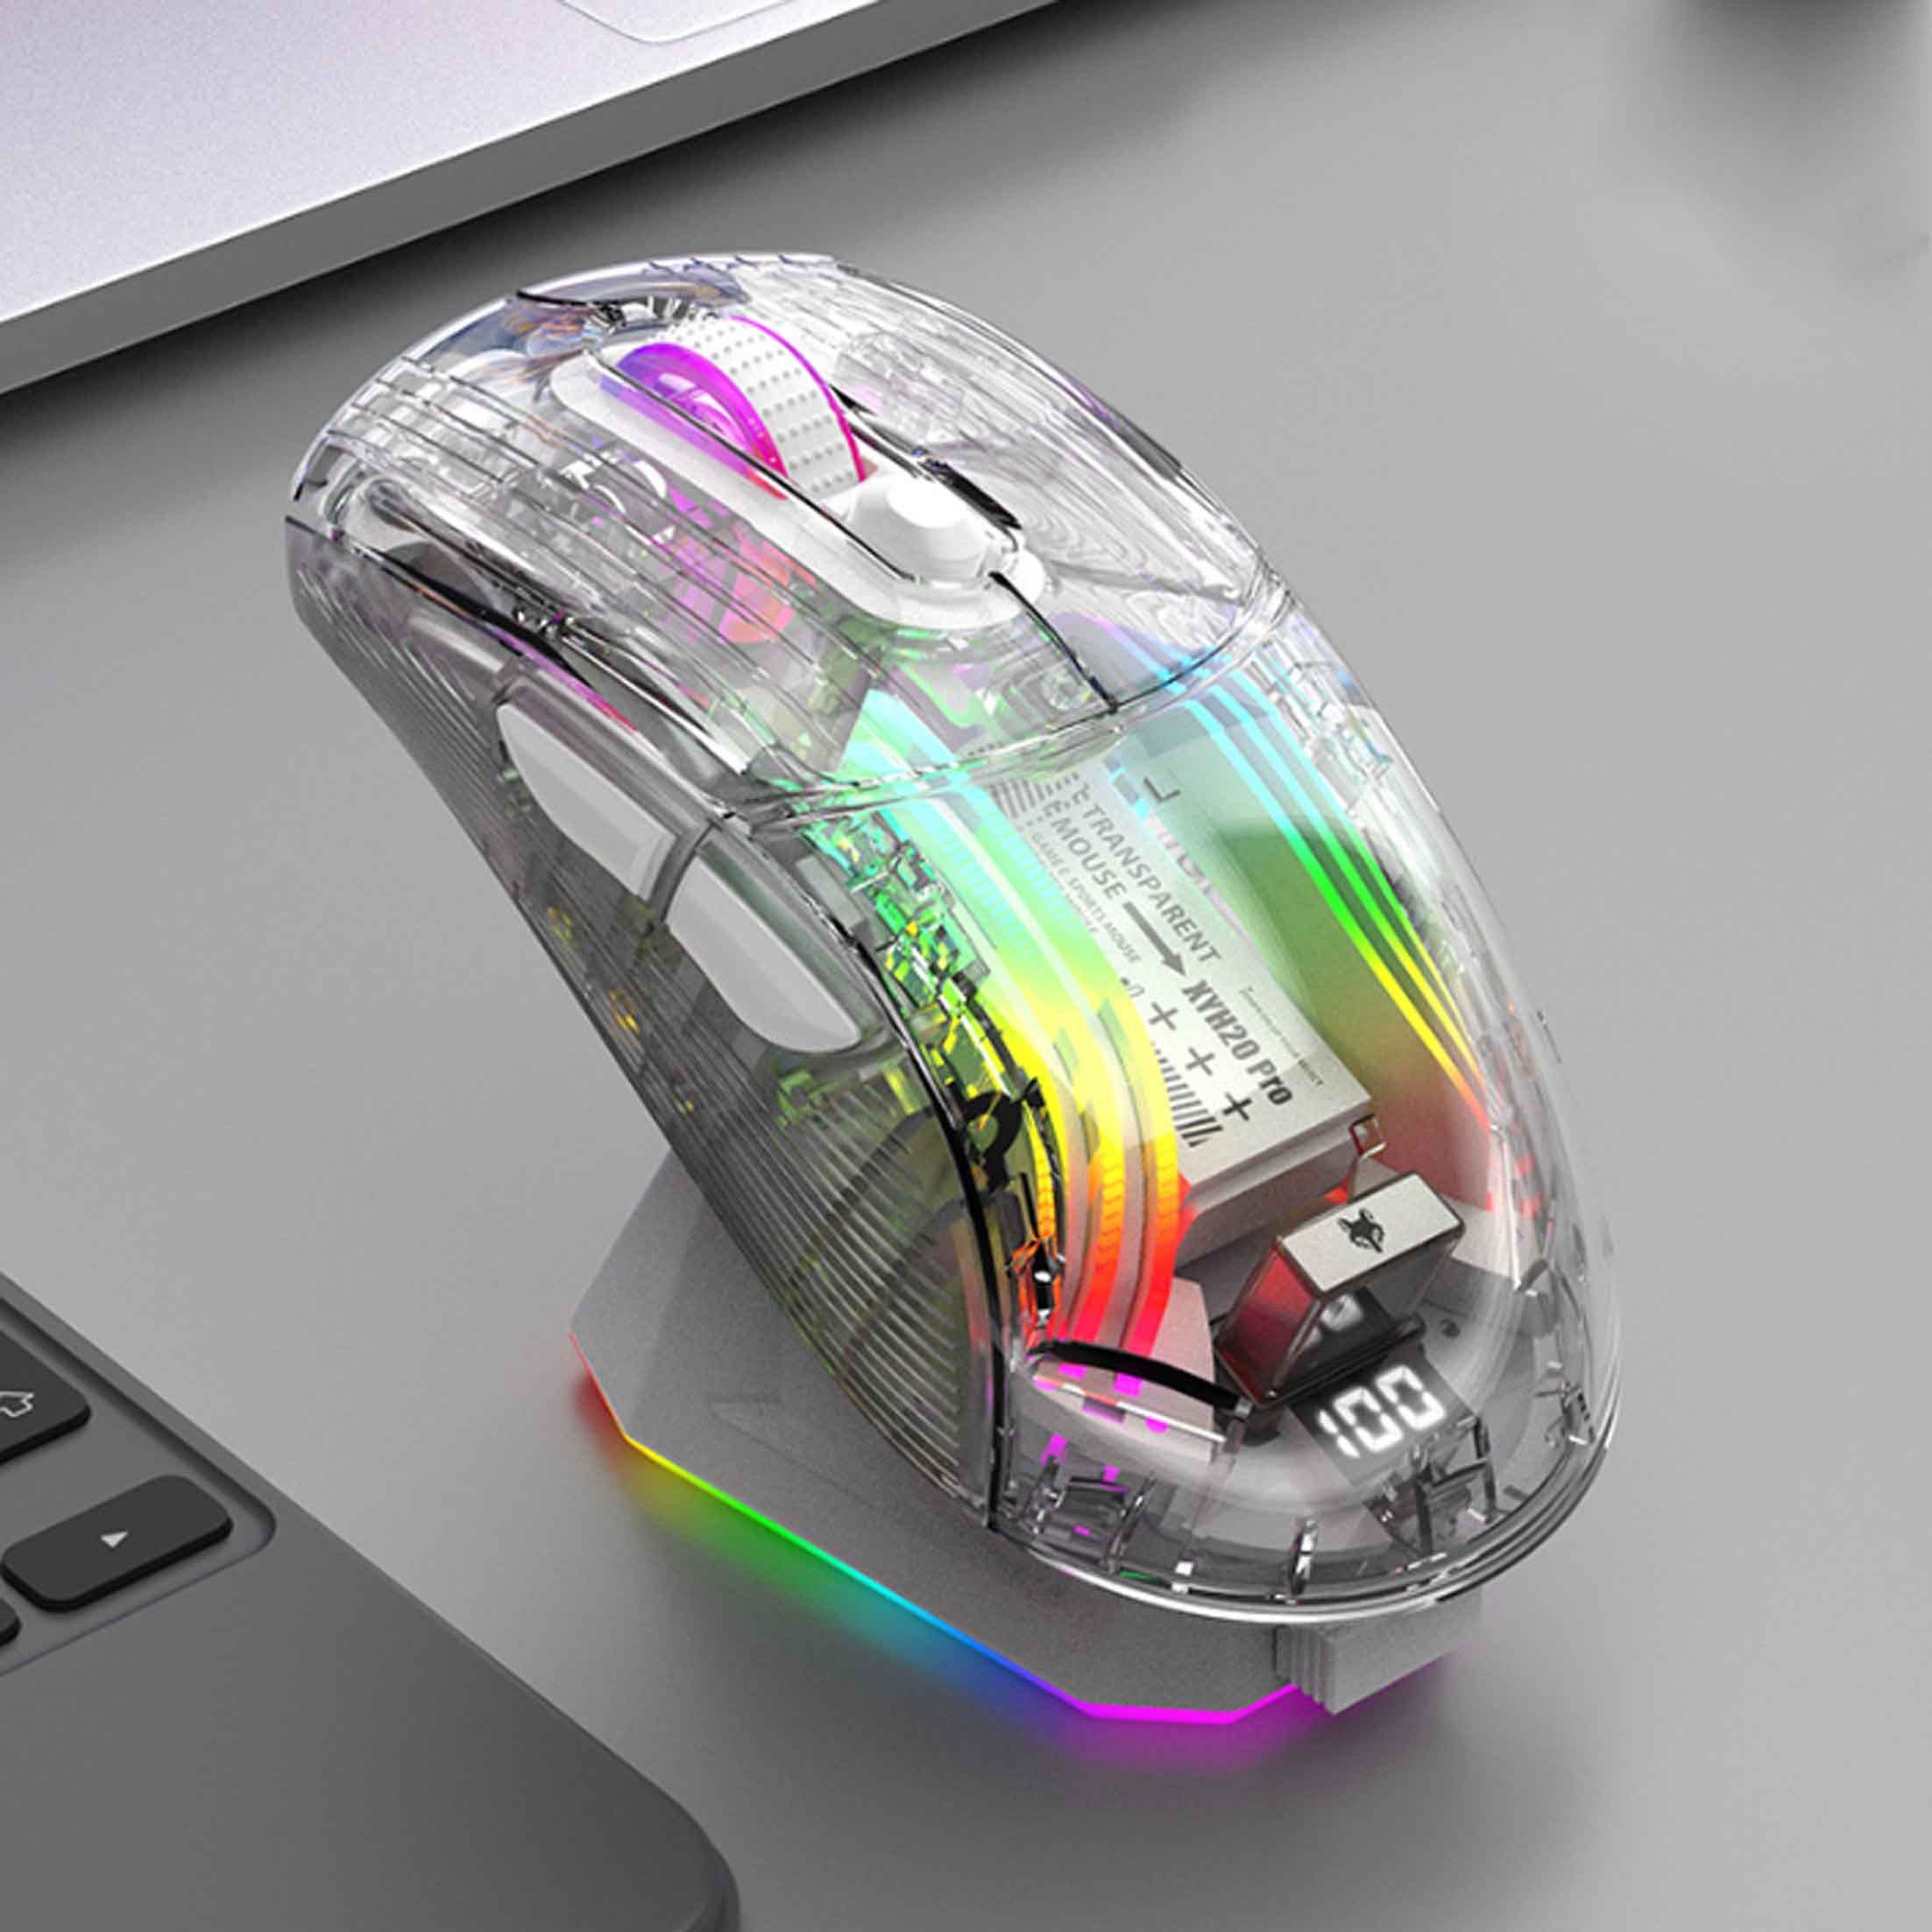 Diida Tri-Mode-Gaming-Maus mit transparentem Gehäuse und RGB-Beleuchtung Gaming-Maus (5 DPI-Geschwindigkeiten, 500mA-Akku, leise Tasten,ergonomisches Design)